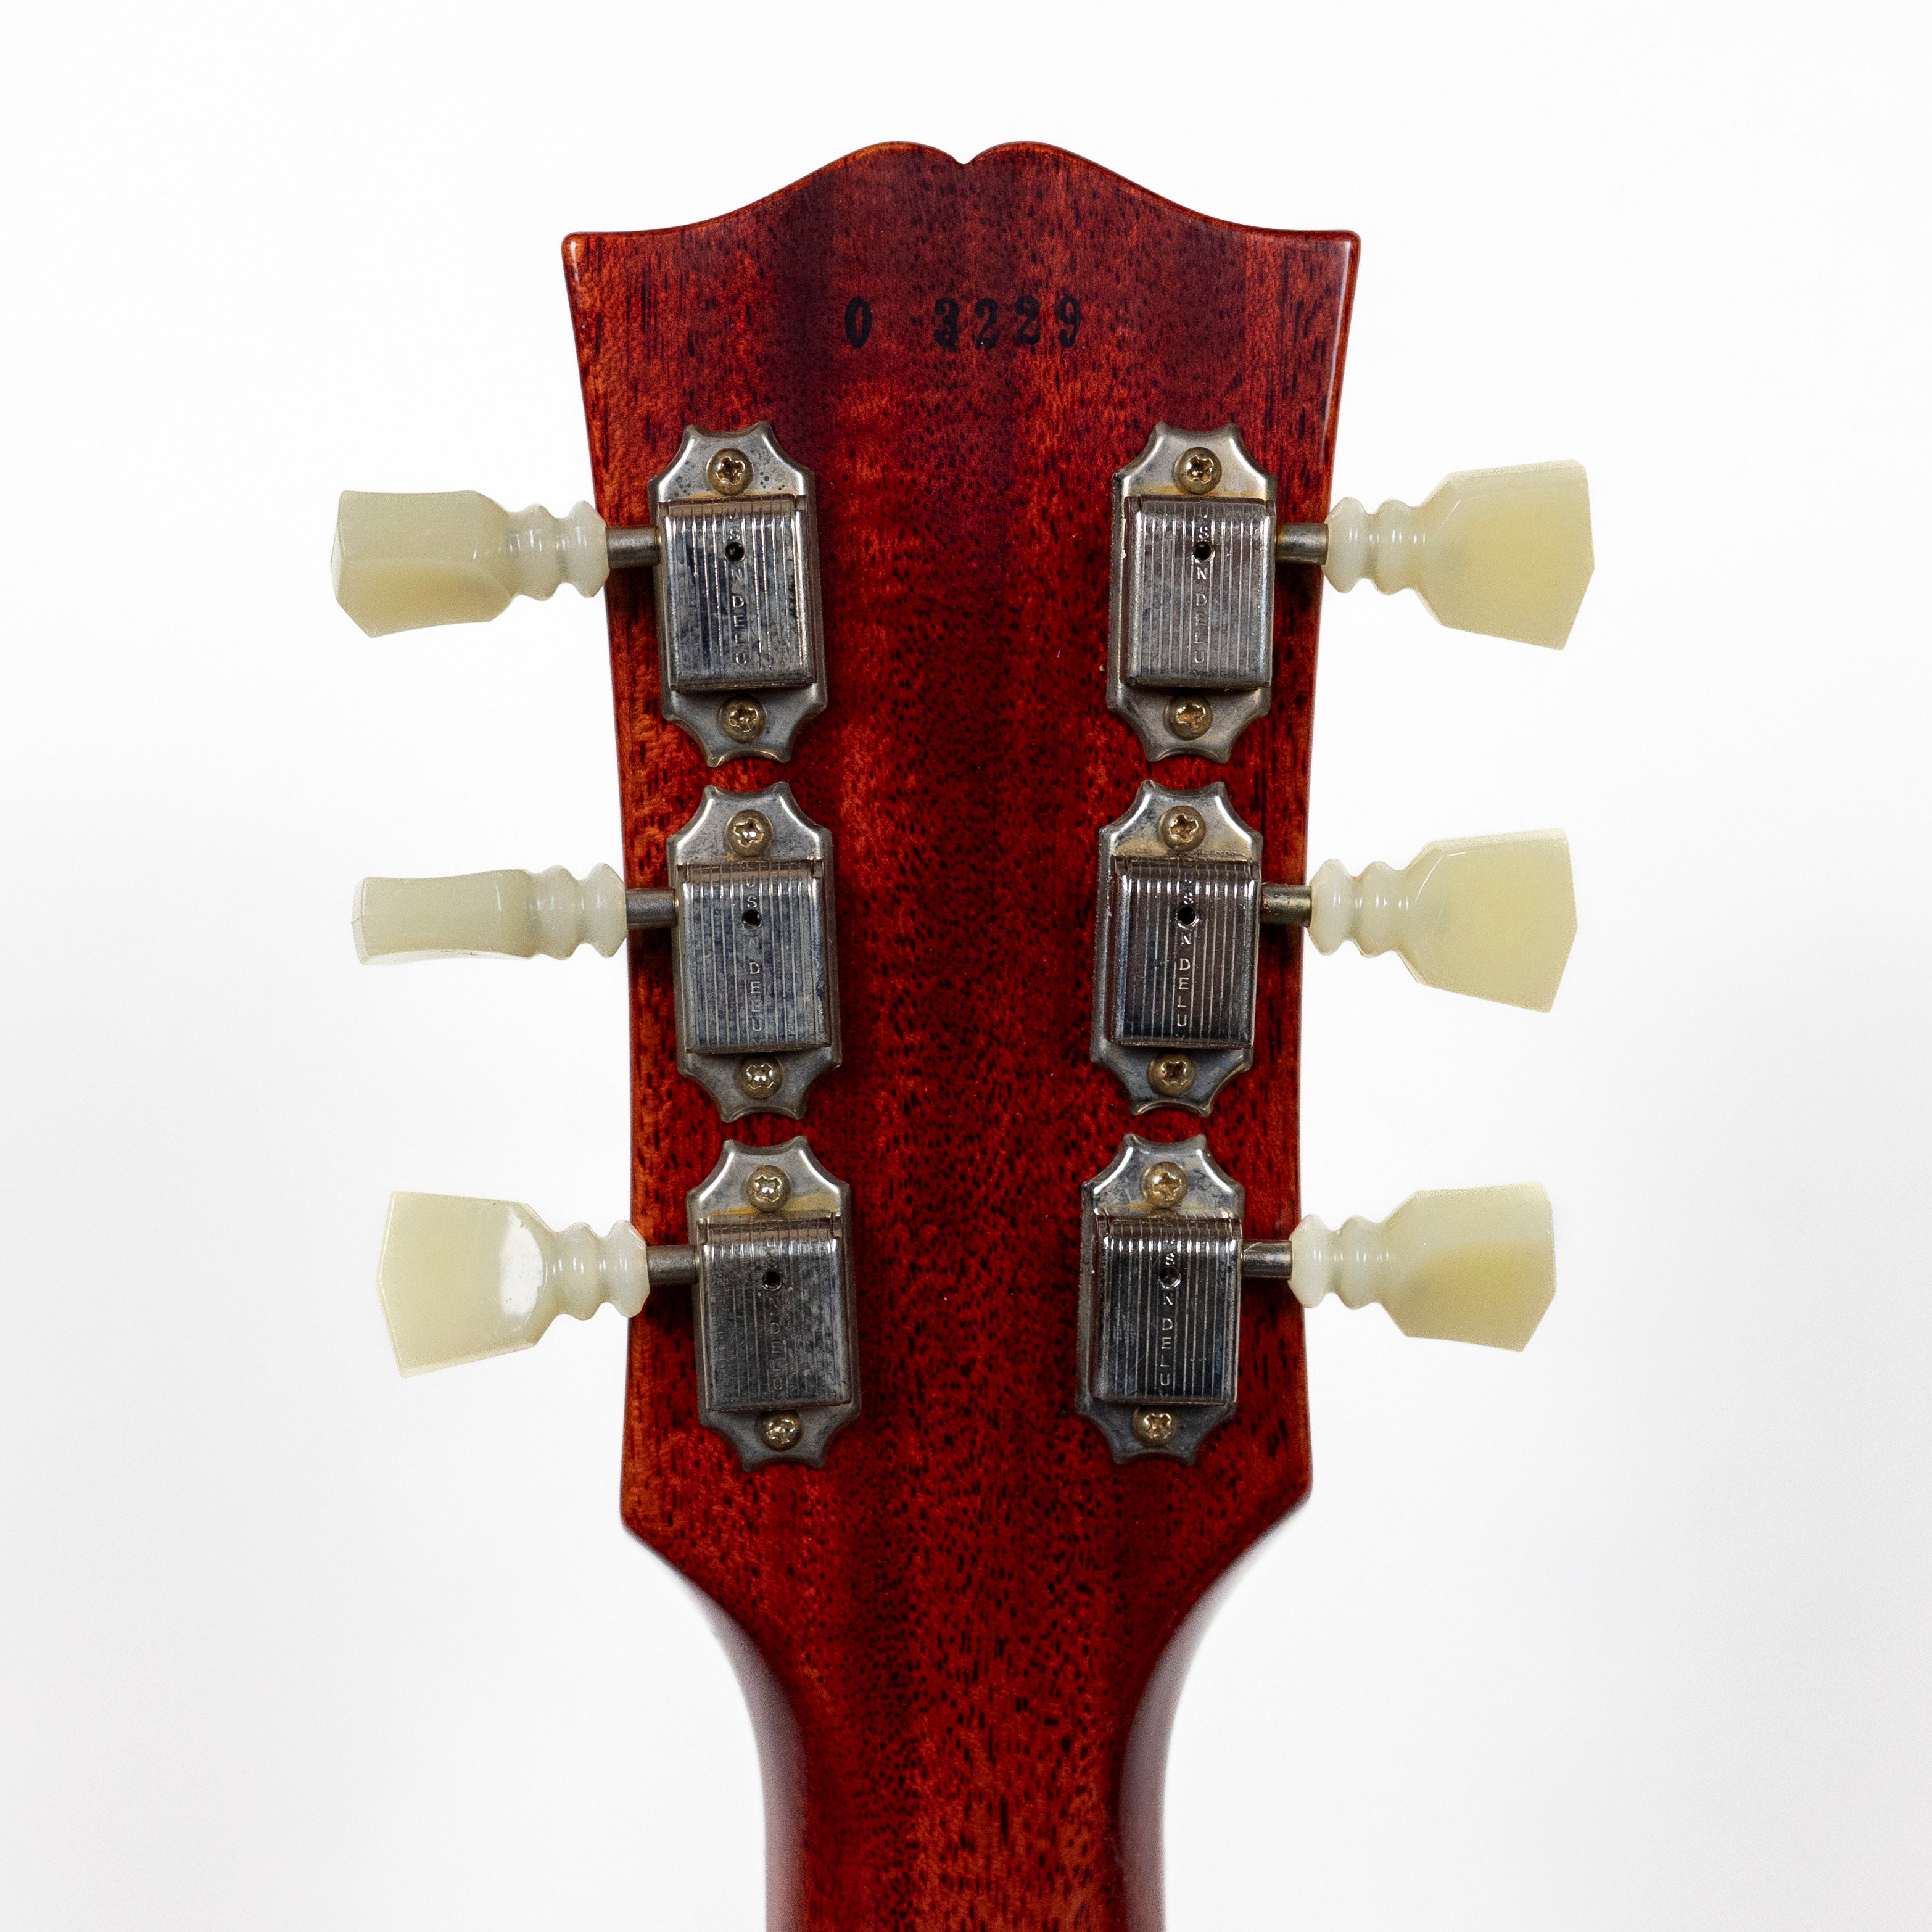 Gibson Custom 1960 Les Paul Standard Reissue VOS Tangerine Burst